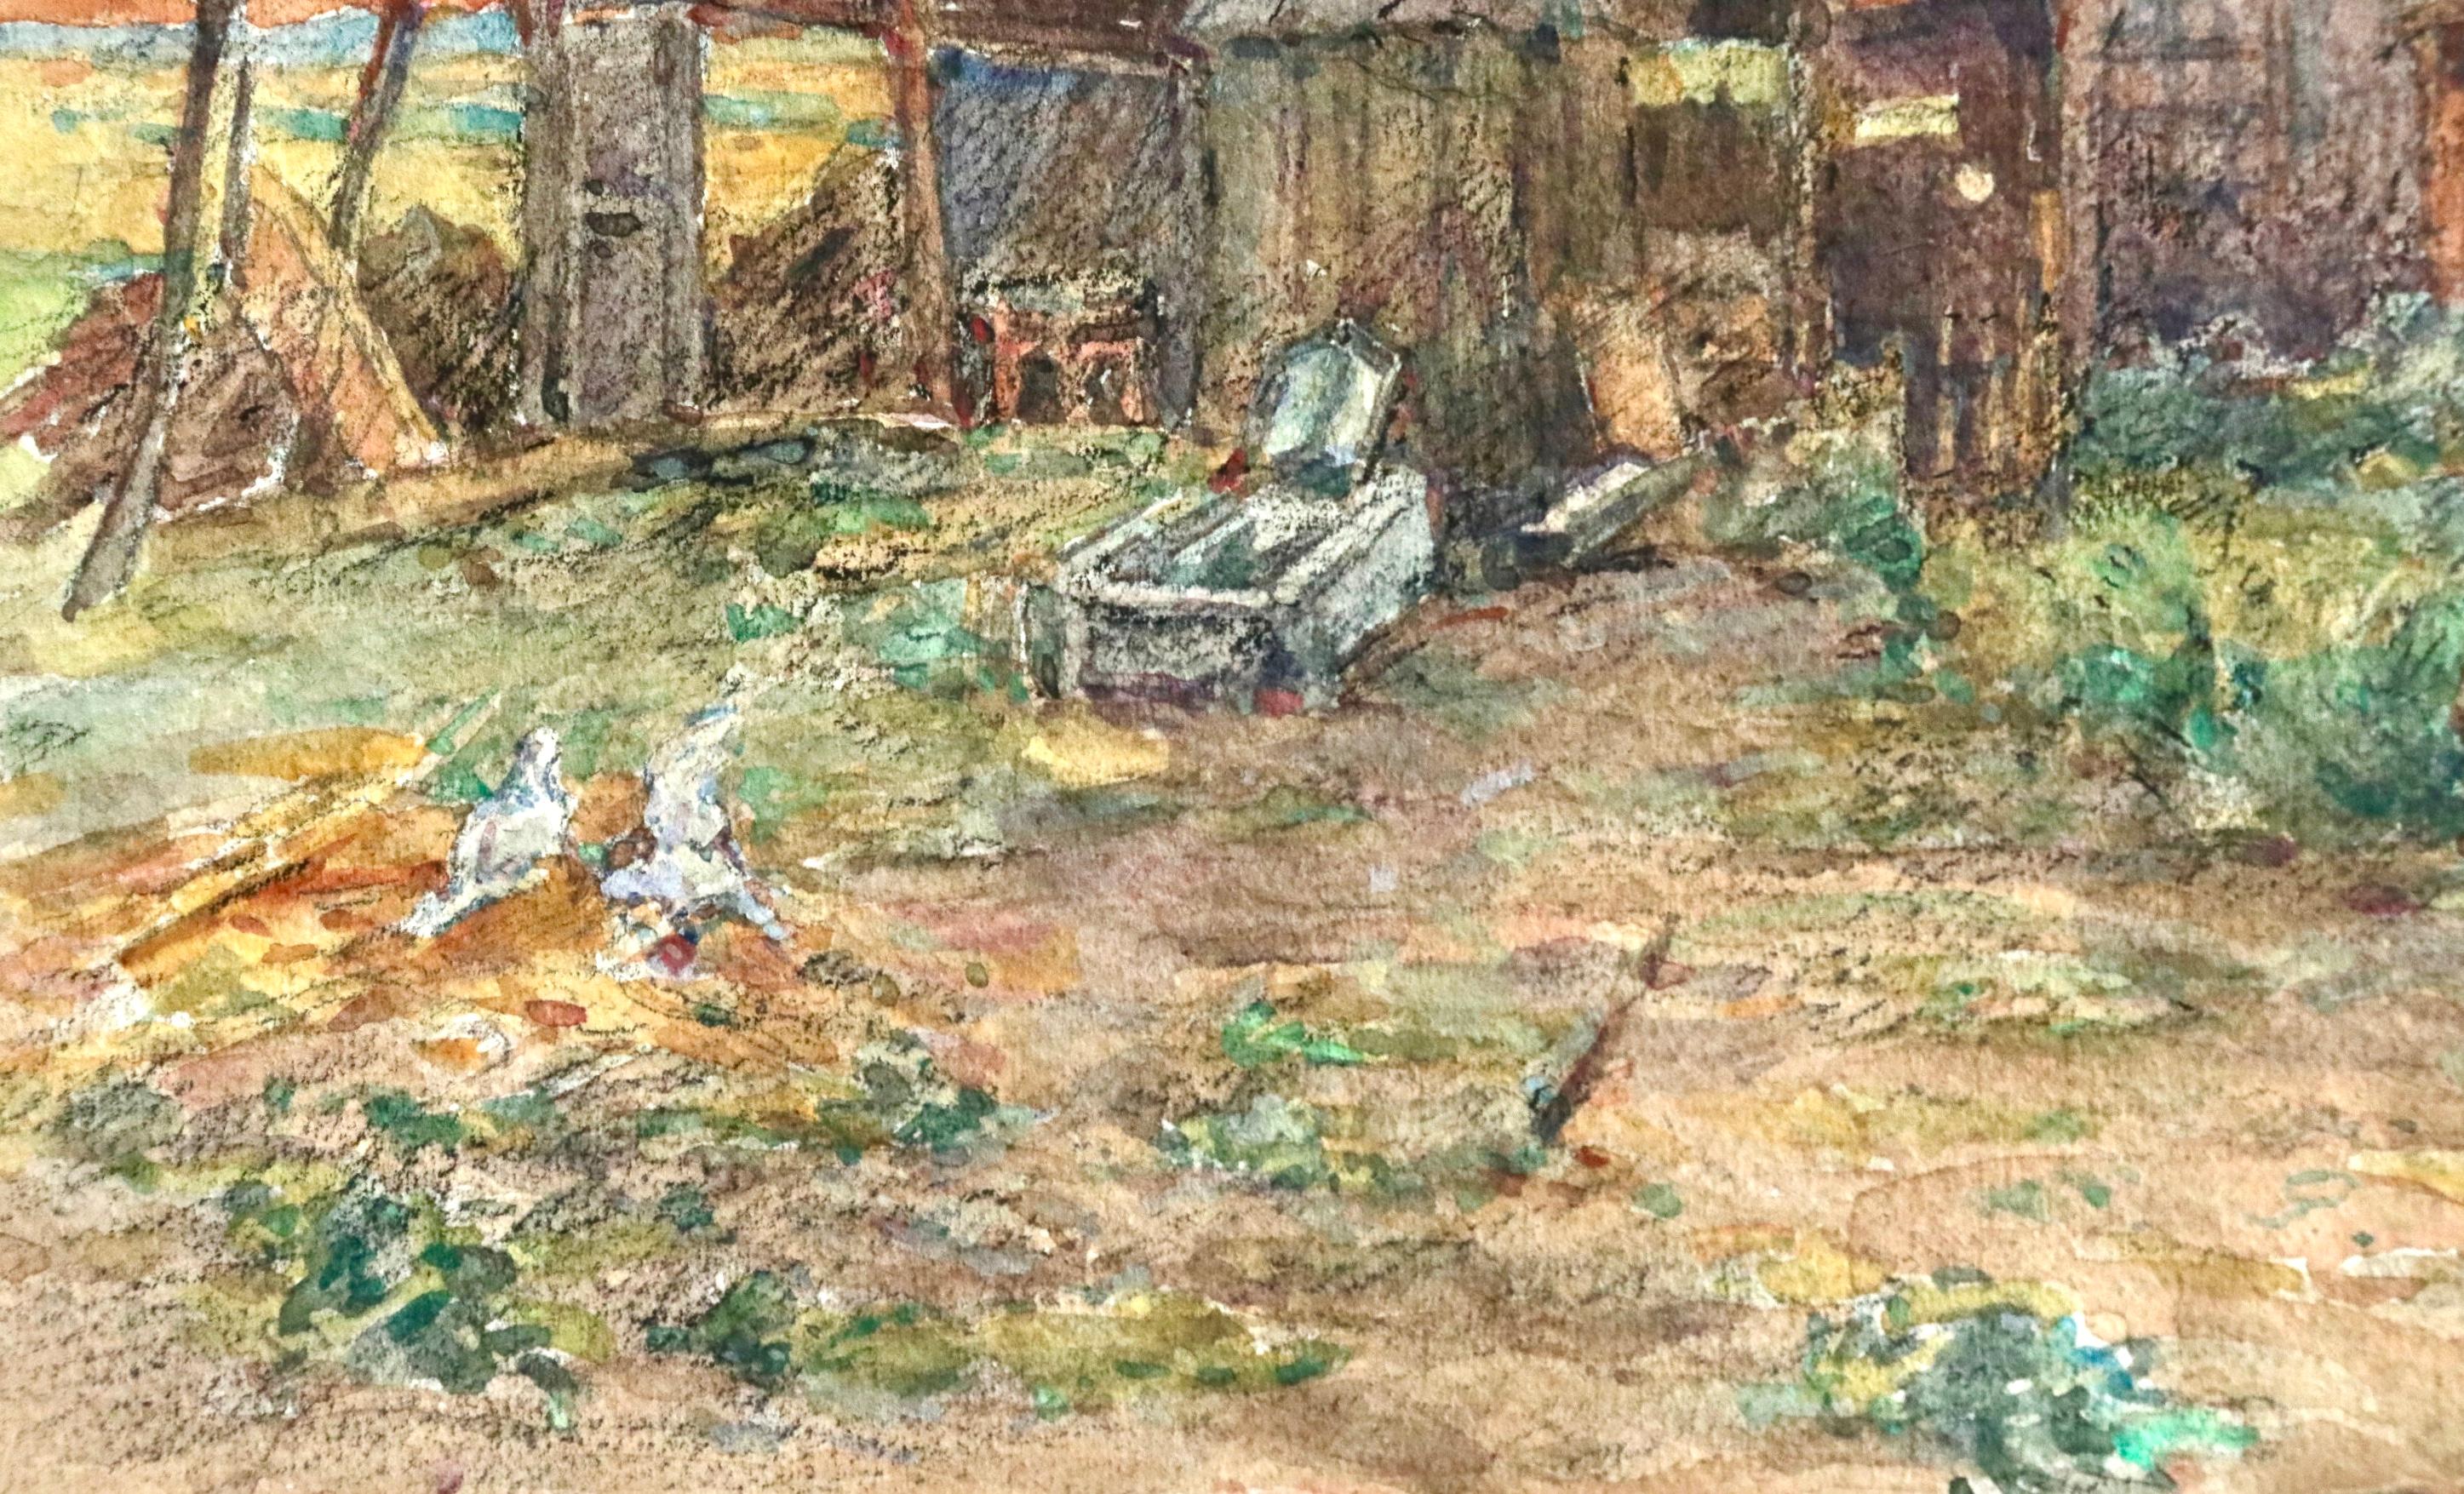 Aquarell auf Papier um 1925, das ein junges Mädchen zeigt, das durch einen Bauernhof läuft, während die Sonne in der Ferne rot untergeht. Signiert unten rechts. Dieses Gemälde ist derzeit nicht gerahmt, aber ein passender Rahmen kann bei Bedarf